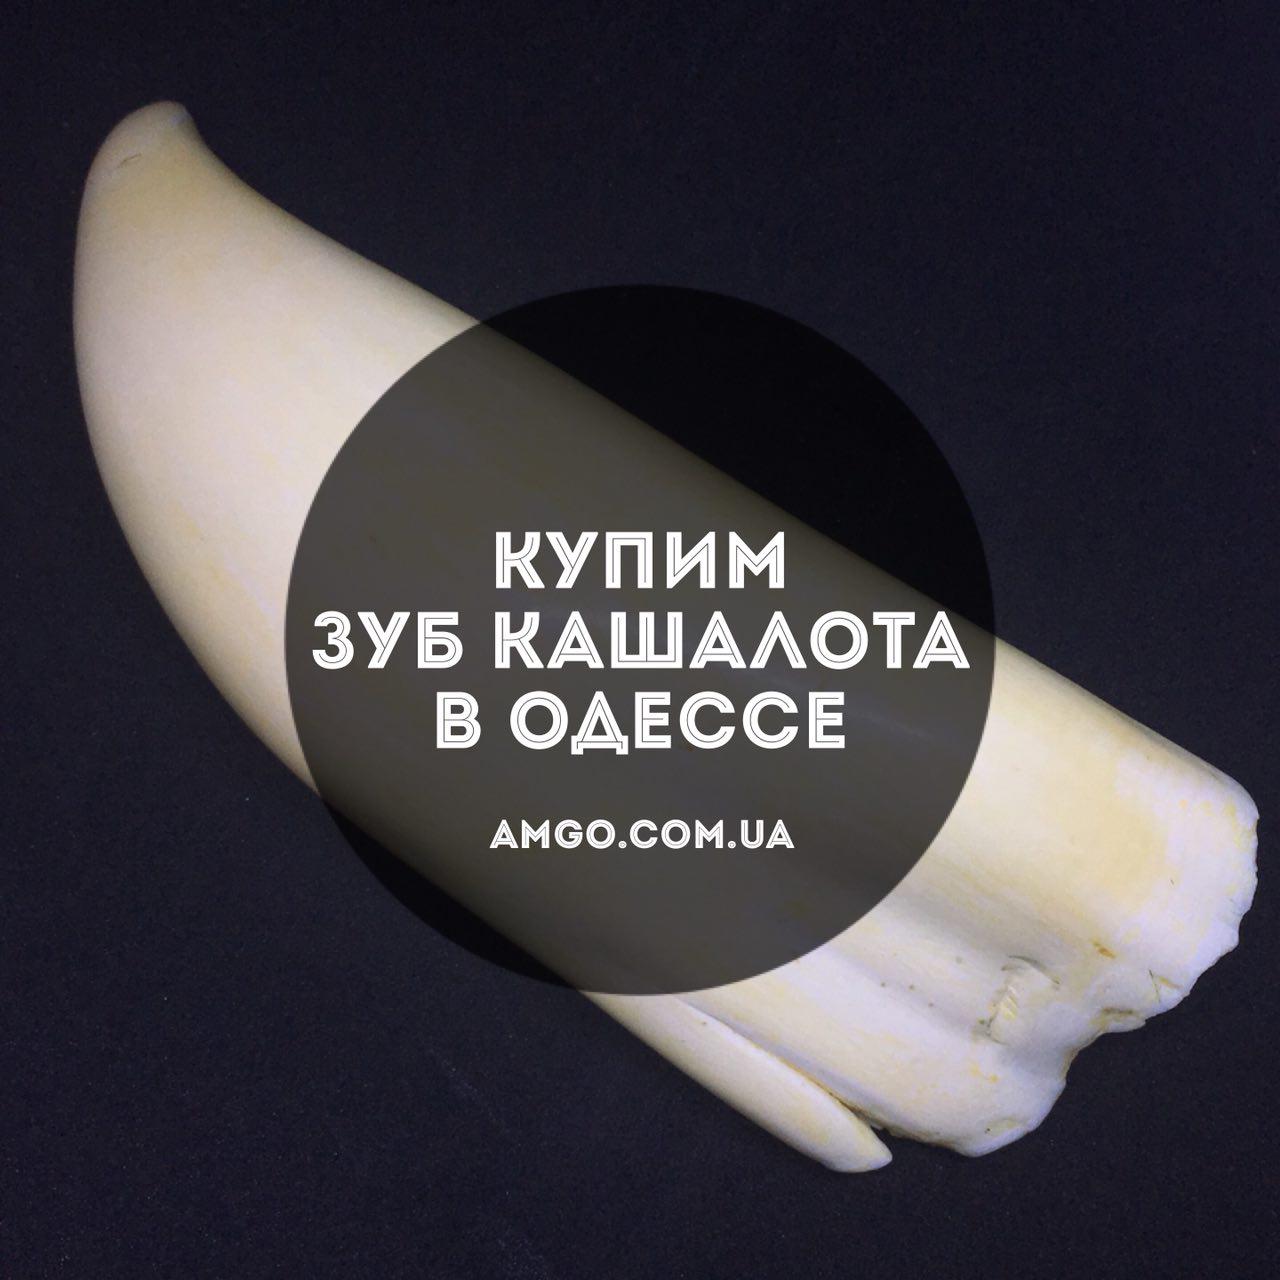 Продать зуб кашалота в Киеве, Харькове, Одессе